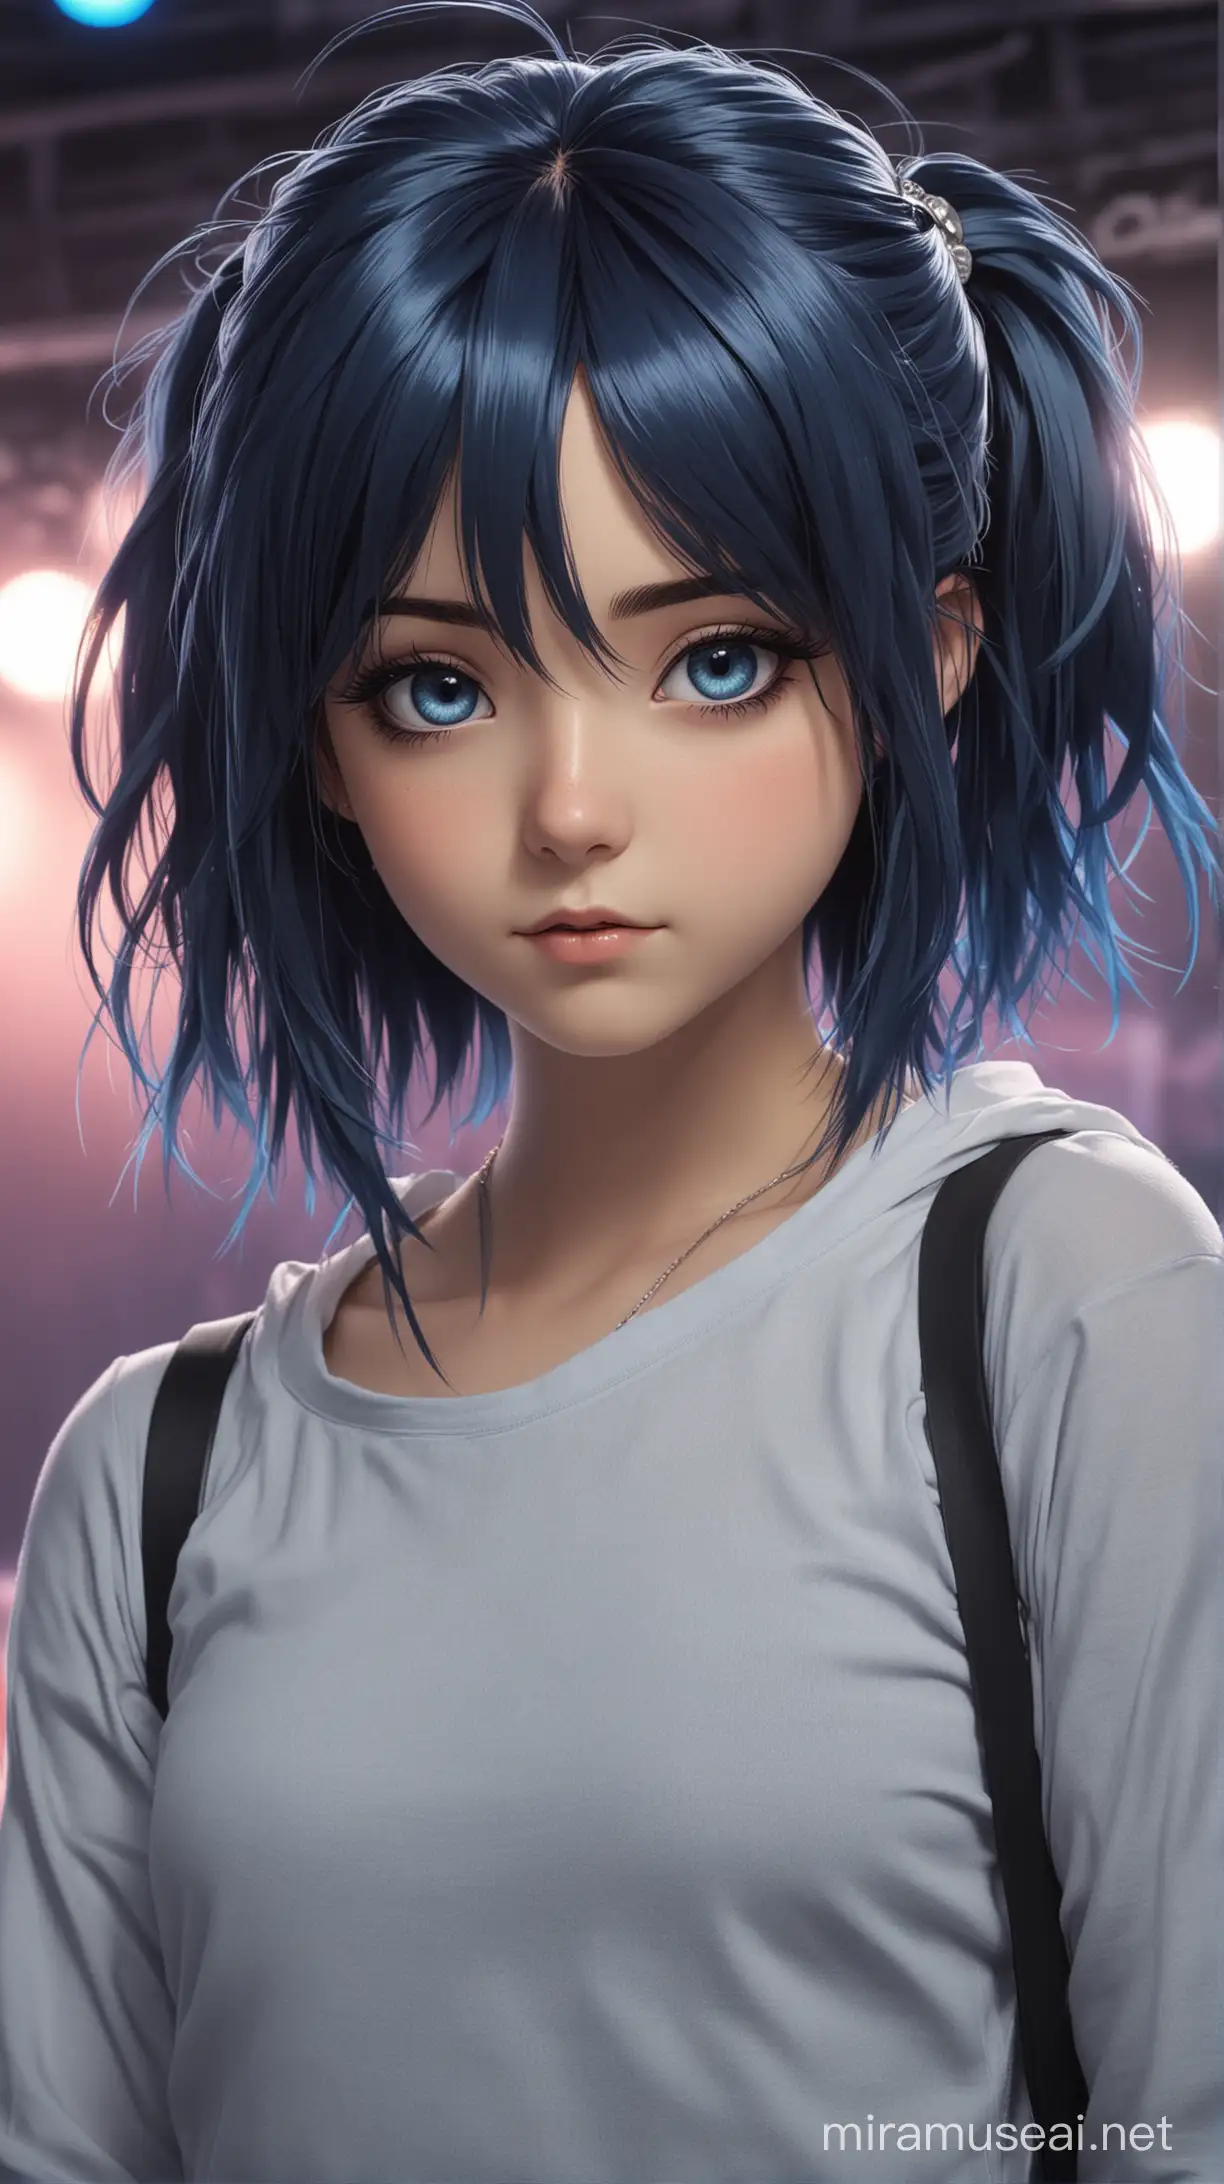 chica anime joven,14 años, cabello azul oscuro, cabello largo, ojos azules,  estilo rock retro moderno, con un escenario detrás.